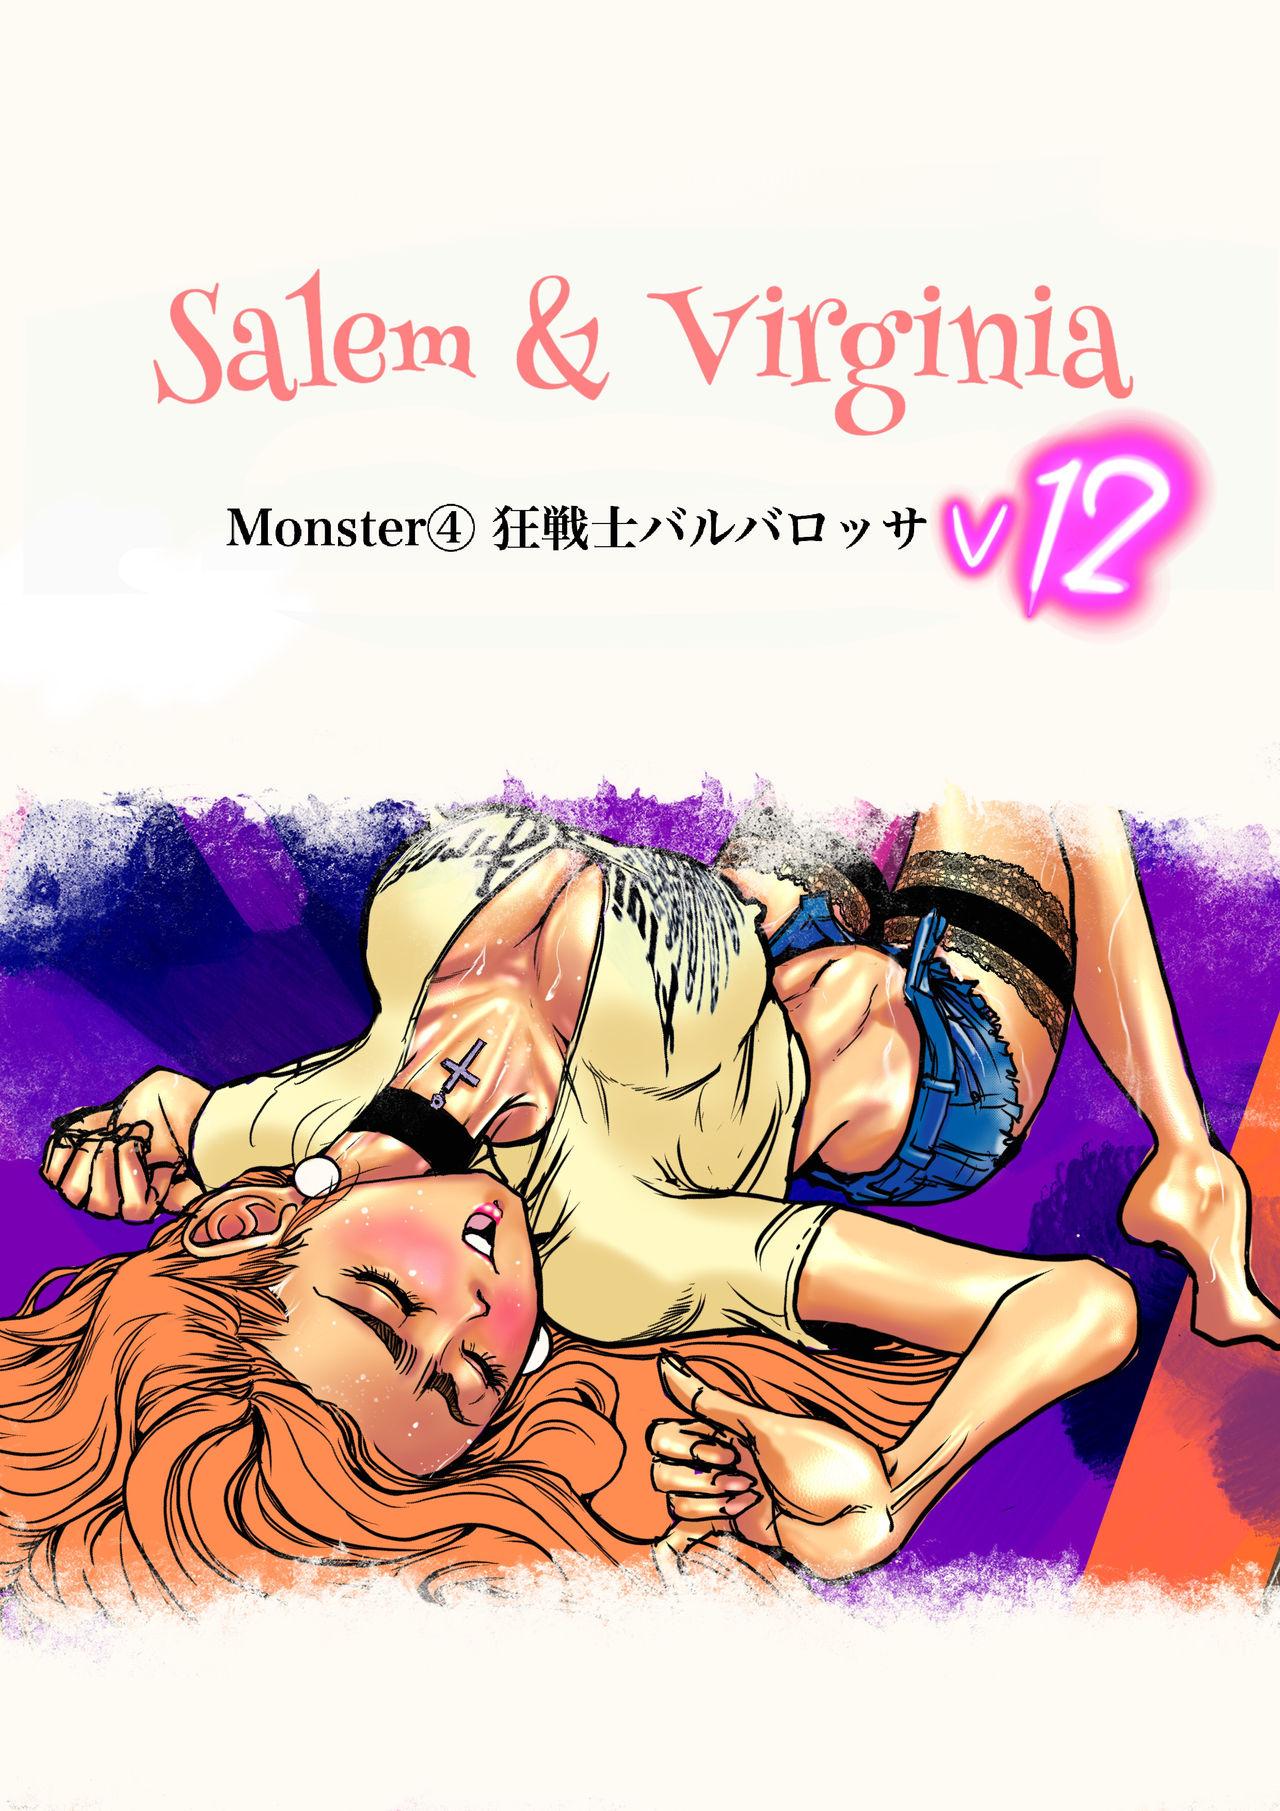 Salem & Virginia 121